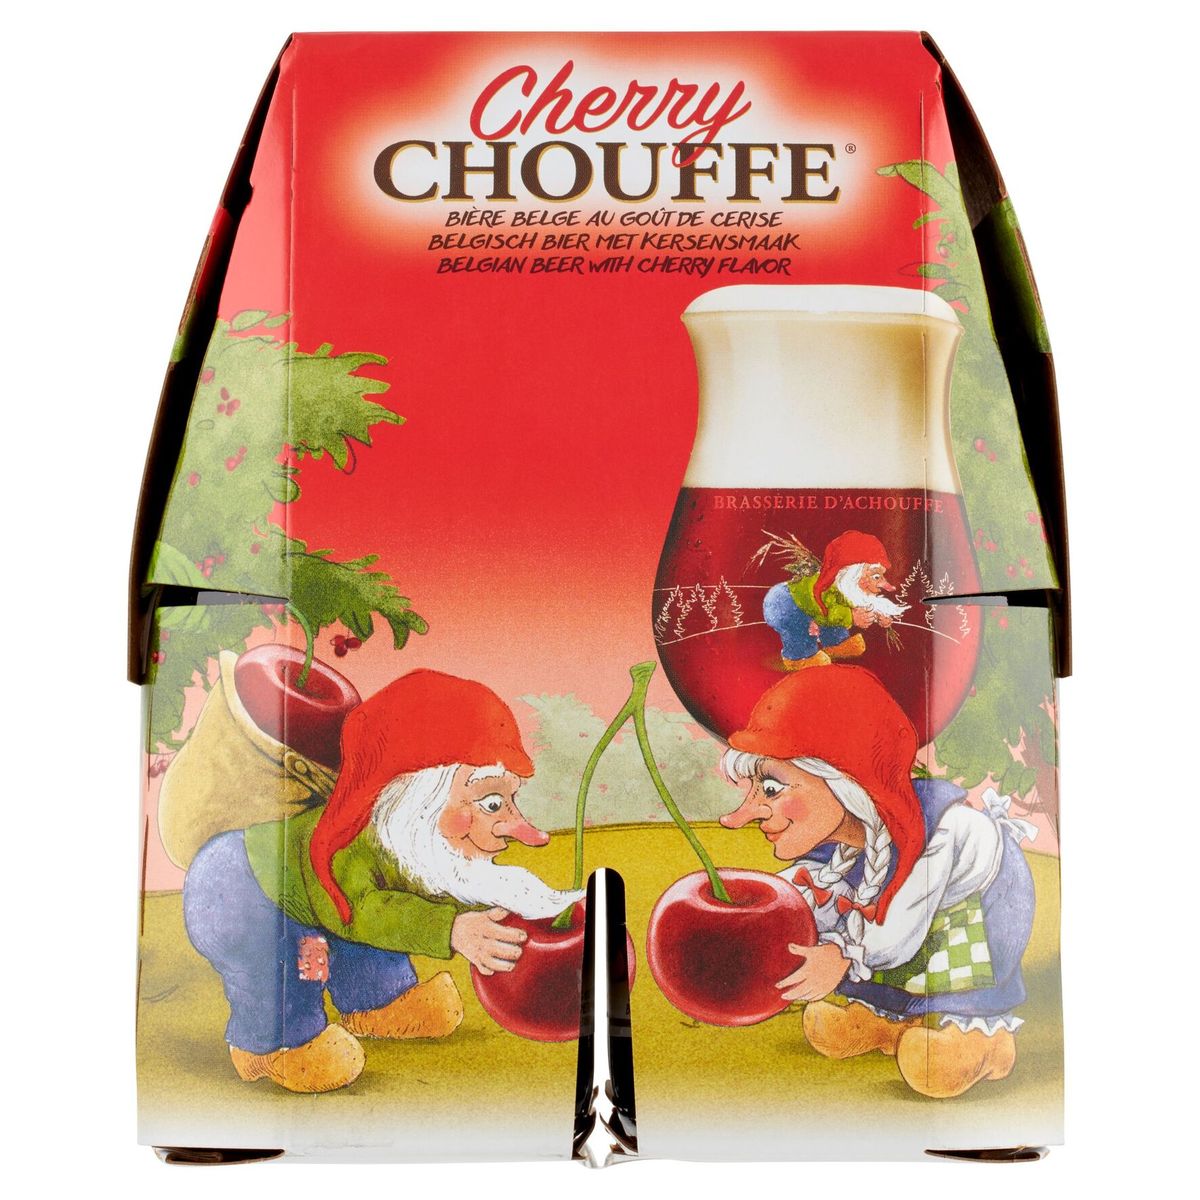 Cherry Chouffe Bière Belge au Goût de Cerise Bouteilles 4 x 330 ml